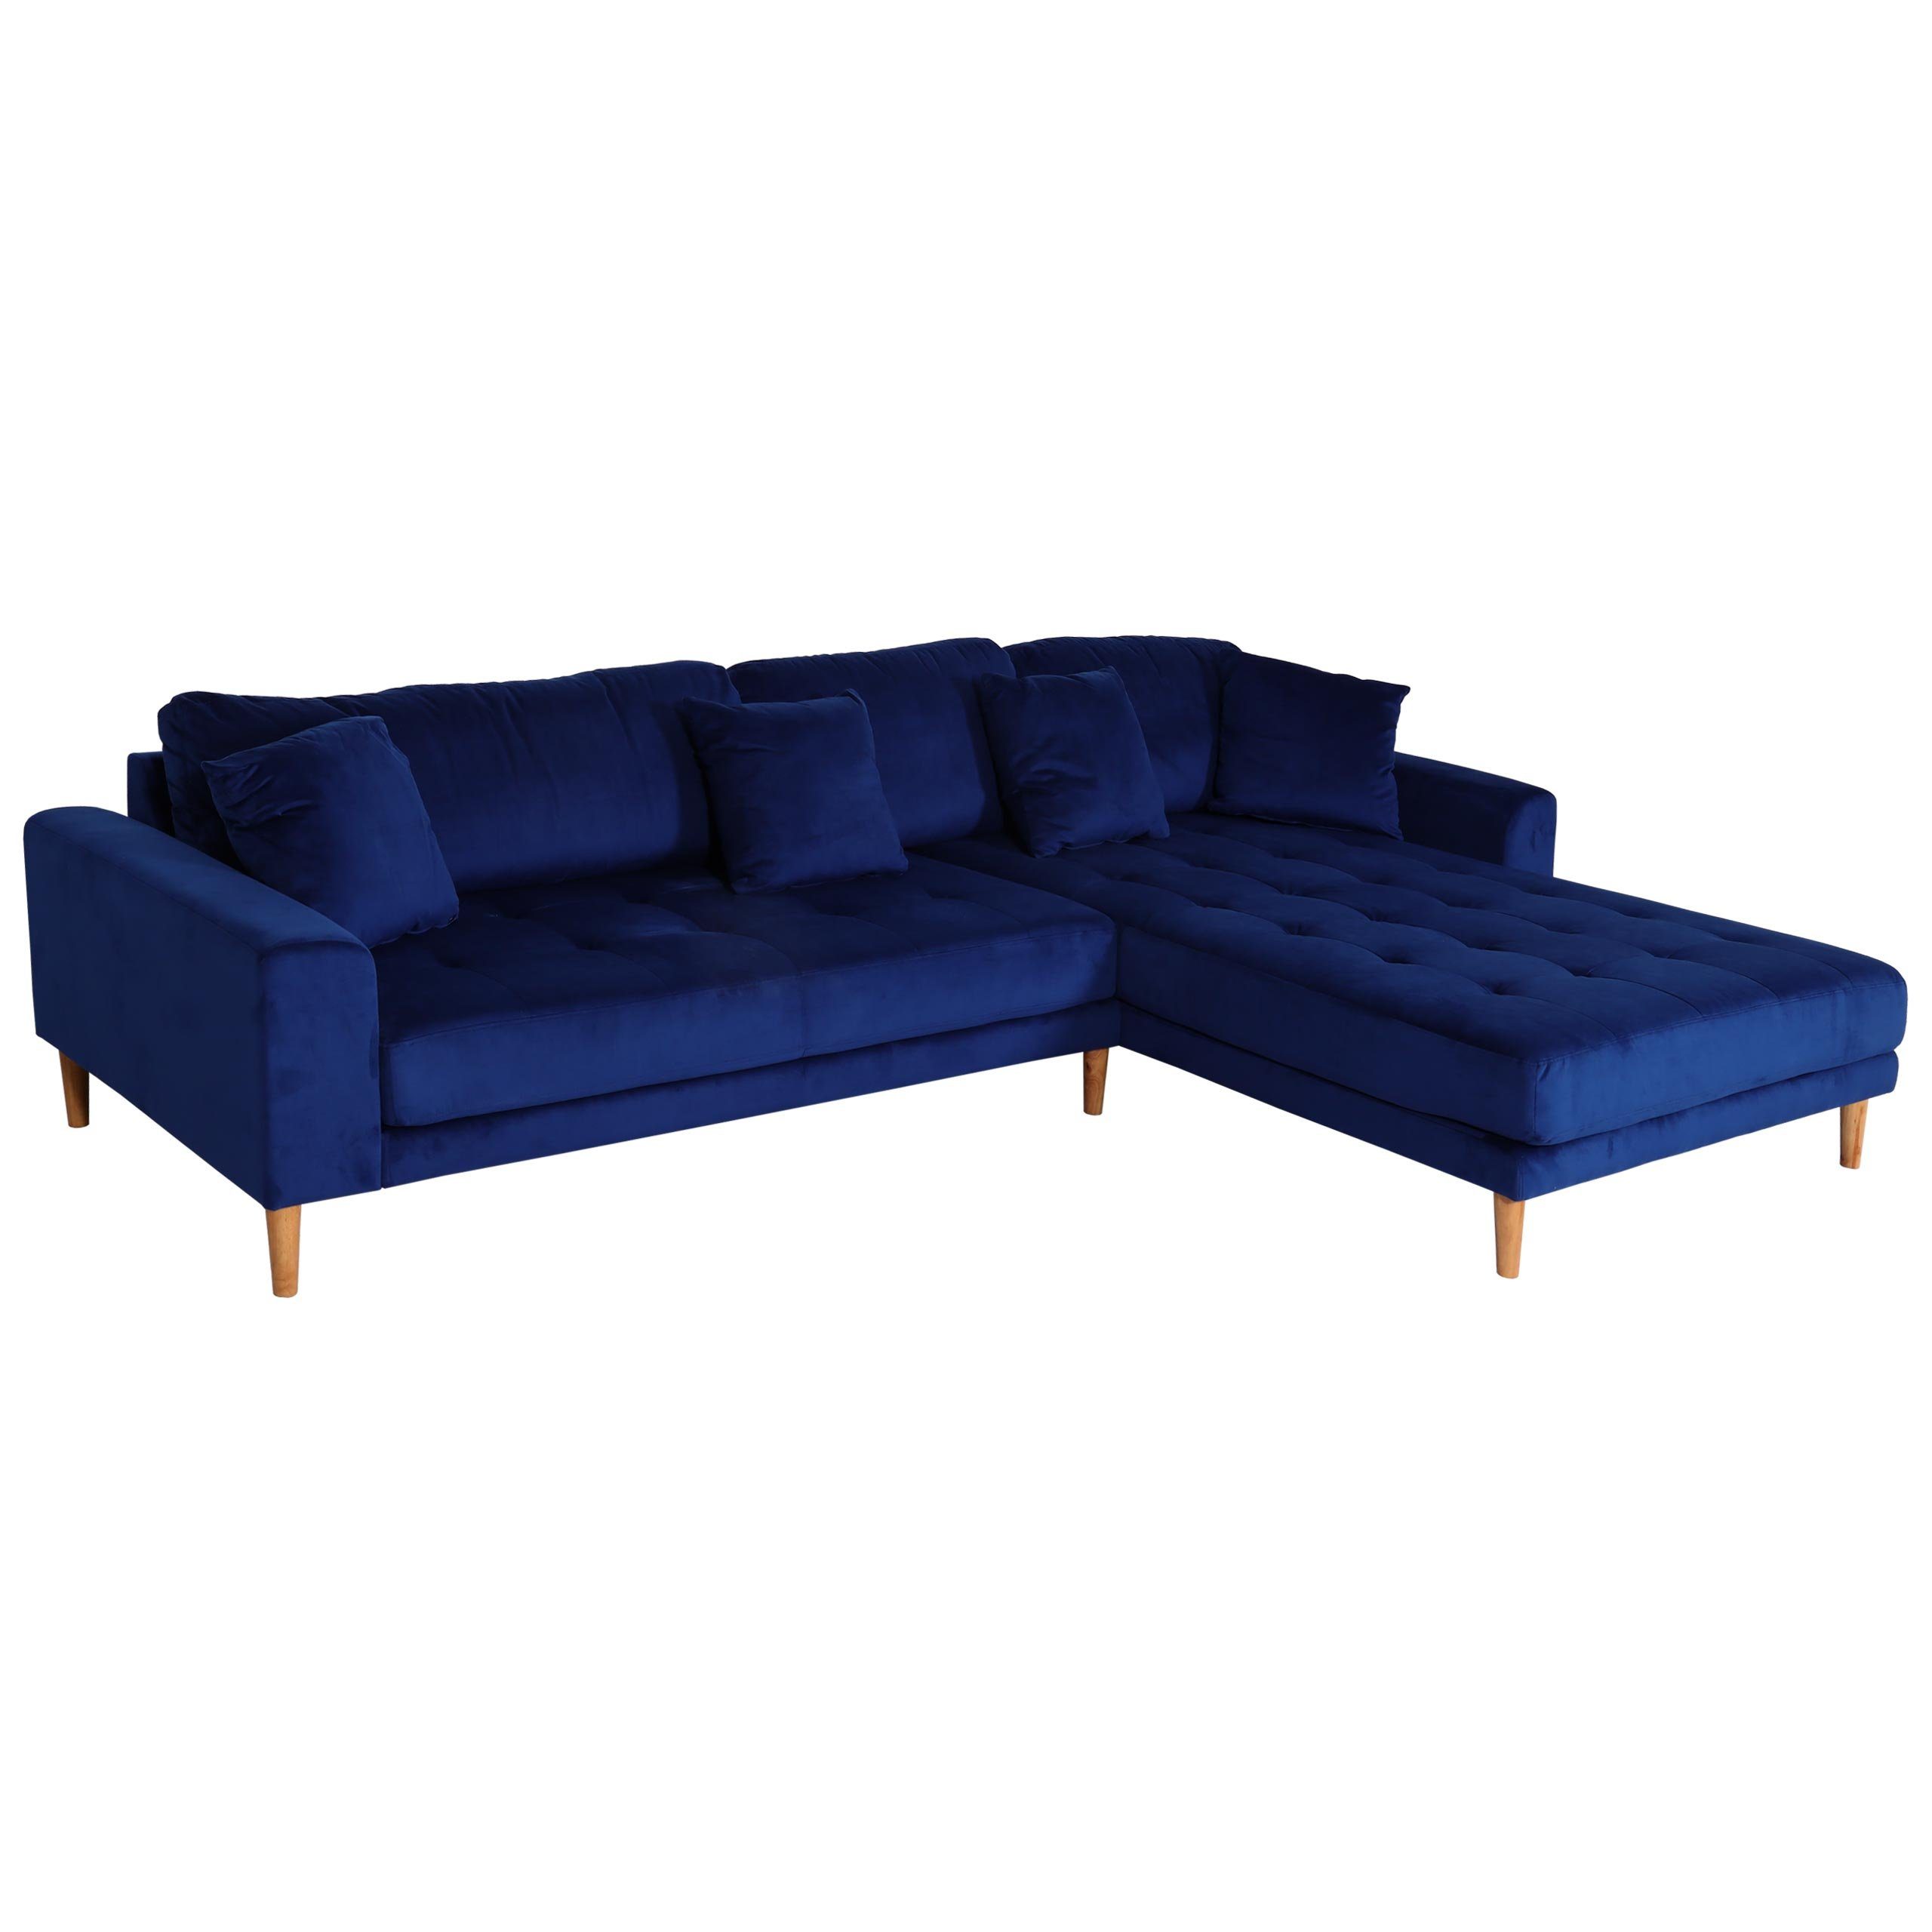 MCW Ecksofa MCW-J54, 1 Teile, Moderner Lounge-Stil, Extradicke Sitzpolsterung, Breite Liegefläche blau | blau